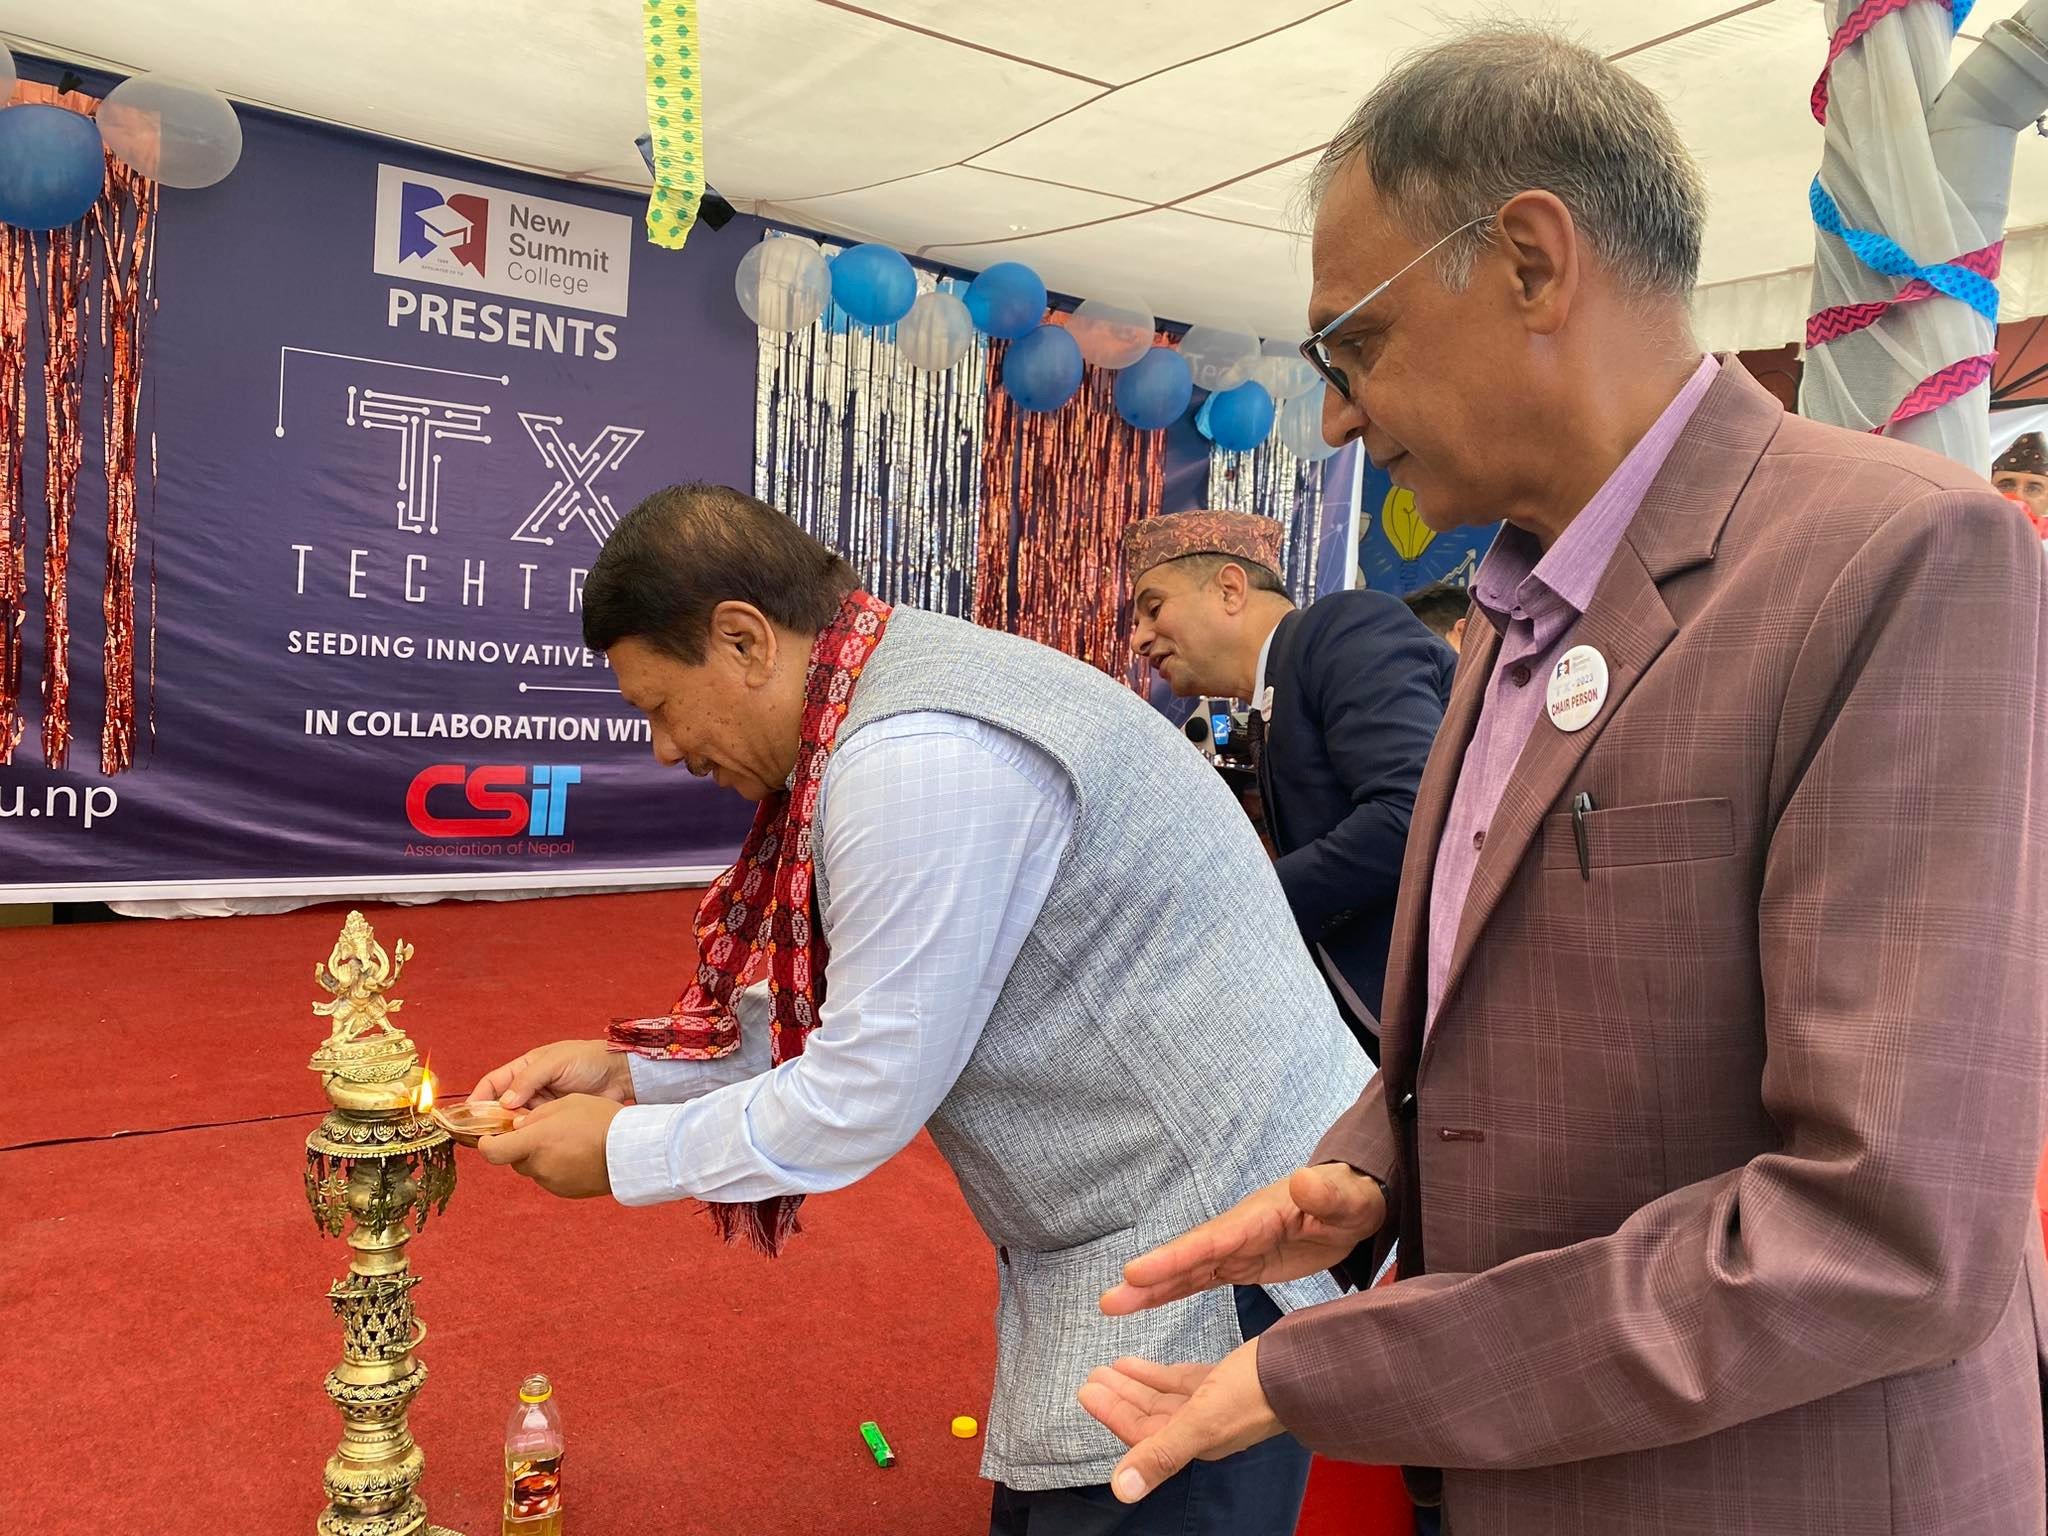 काठमाडाैंकाे शान्तिनगरमा रहेकाे न्यू समिट कलेजमा TechTrix 2023 सुरु